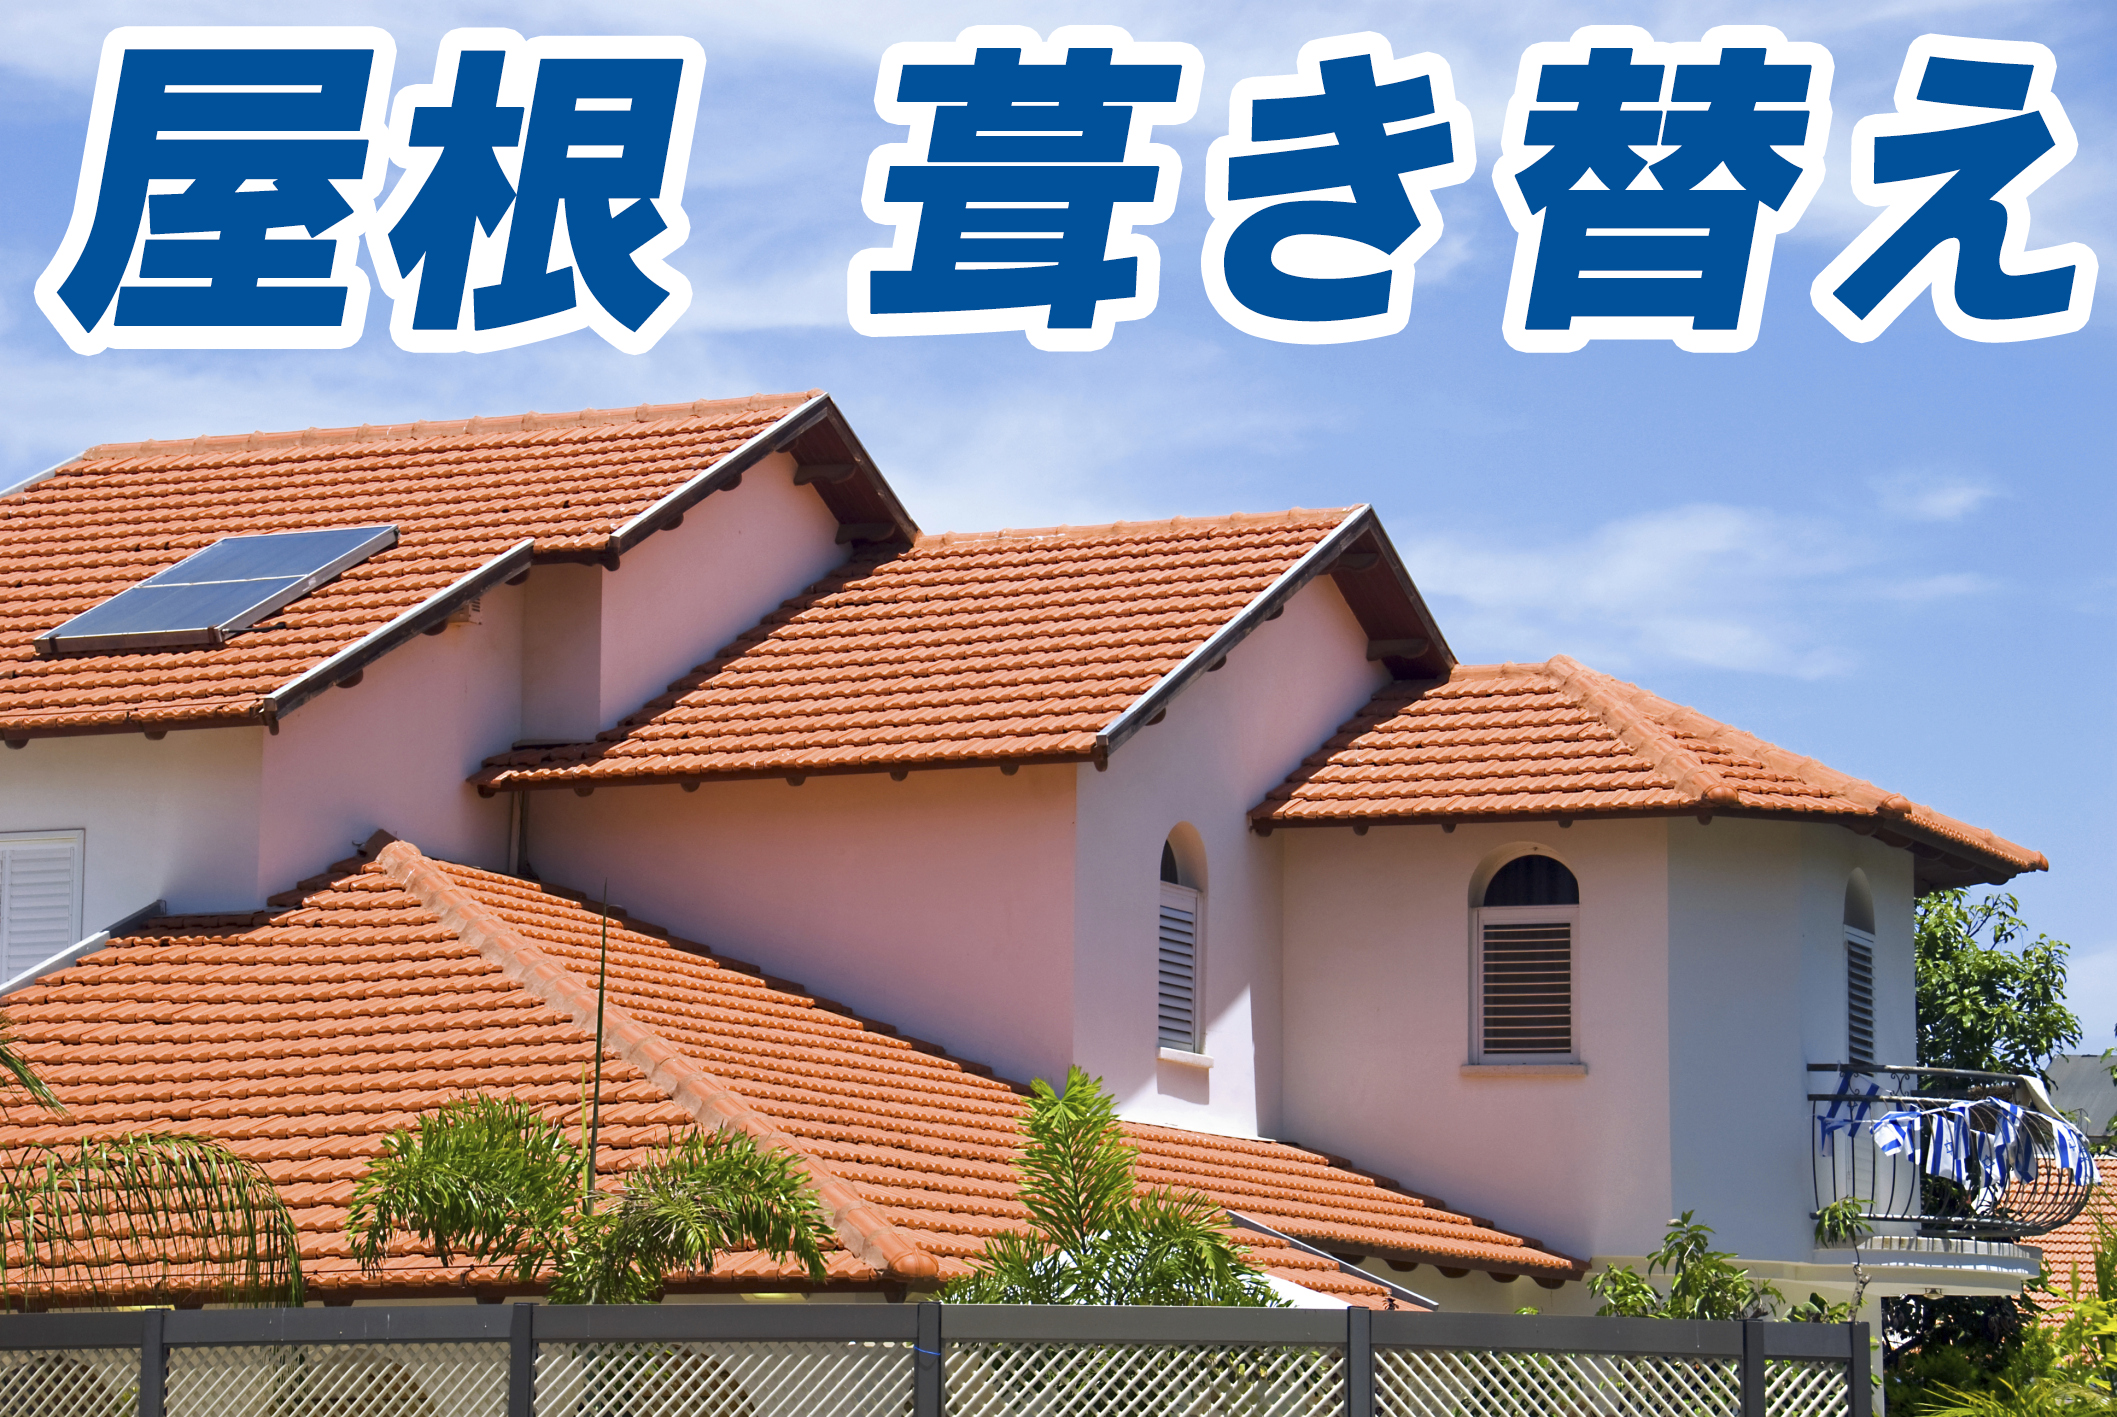 屋根を葺き替えする前に 必ず知って欲しい7つのアドバイス 住宅総合研究所 ハウス情報ドットコム